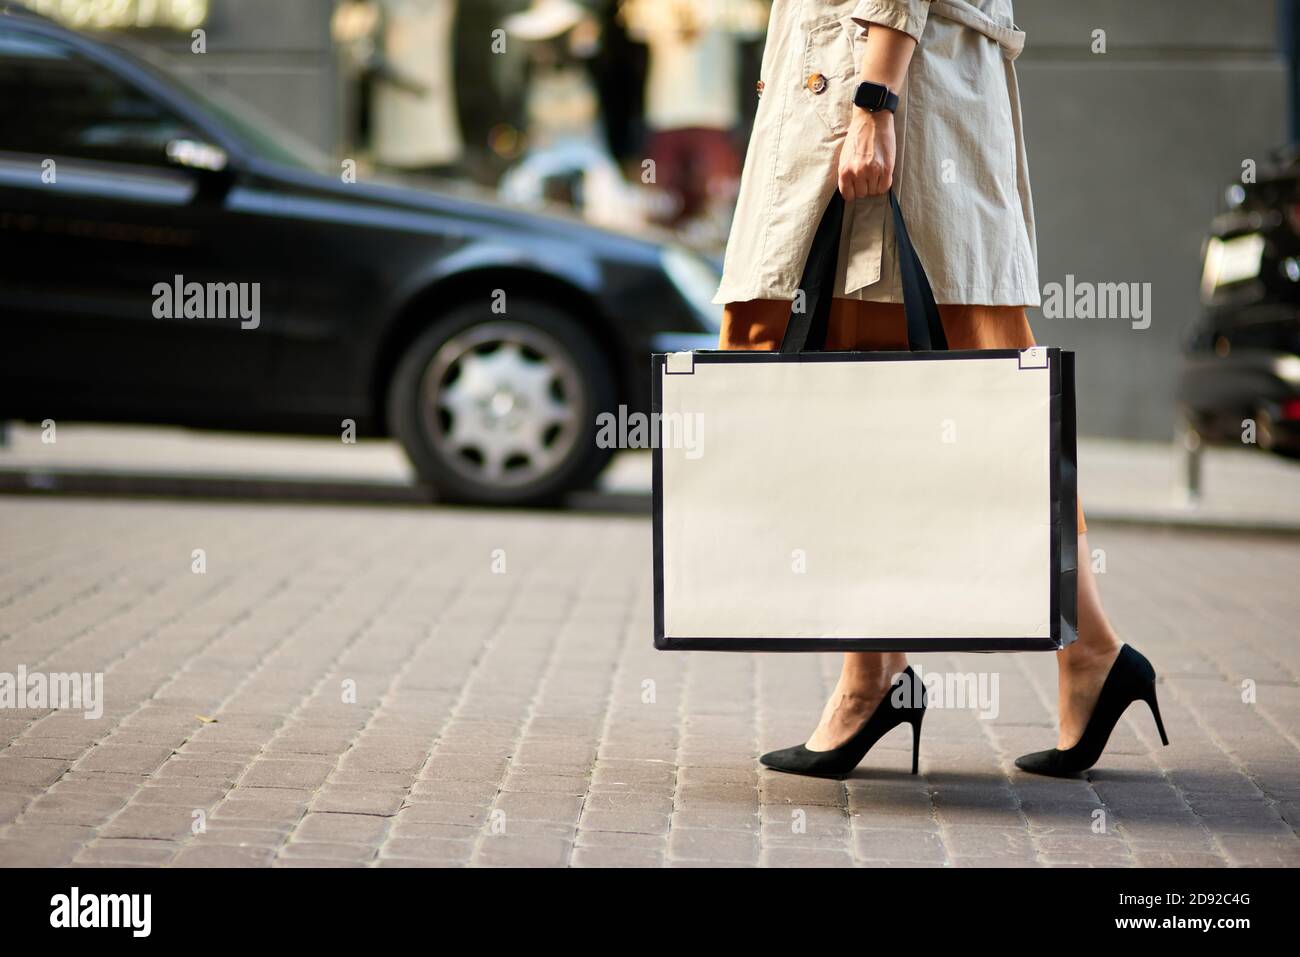 Einkaufstag. Kurze Aufnahme einer Frau in Schuhen mit hohem Absatz, die eine große Einkaufstasche tragen und durch die Straßen der Stadt laufen. Mode, Menschen Lifestyle-Konzept Stockfoto